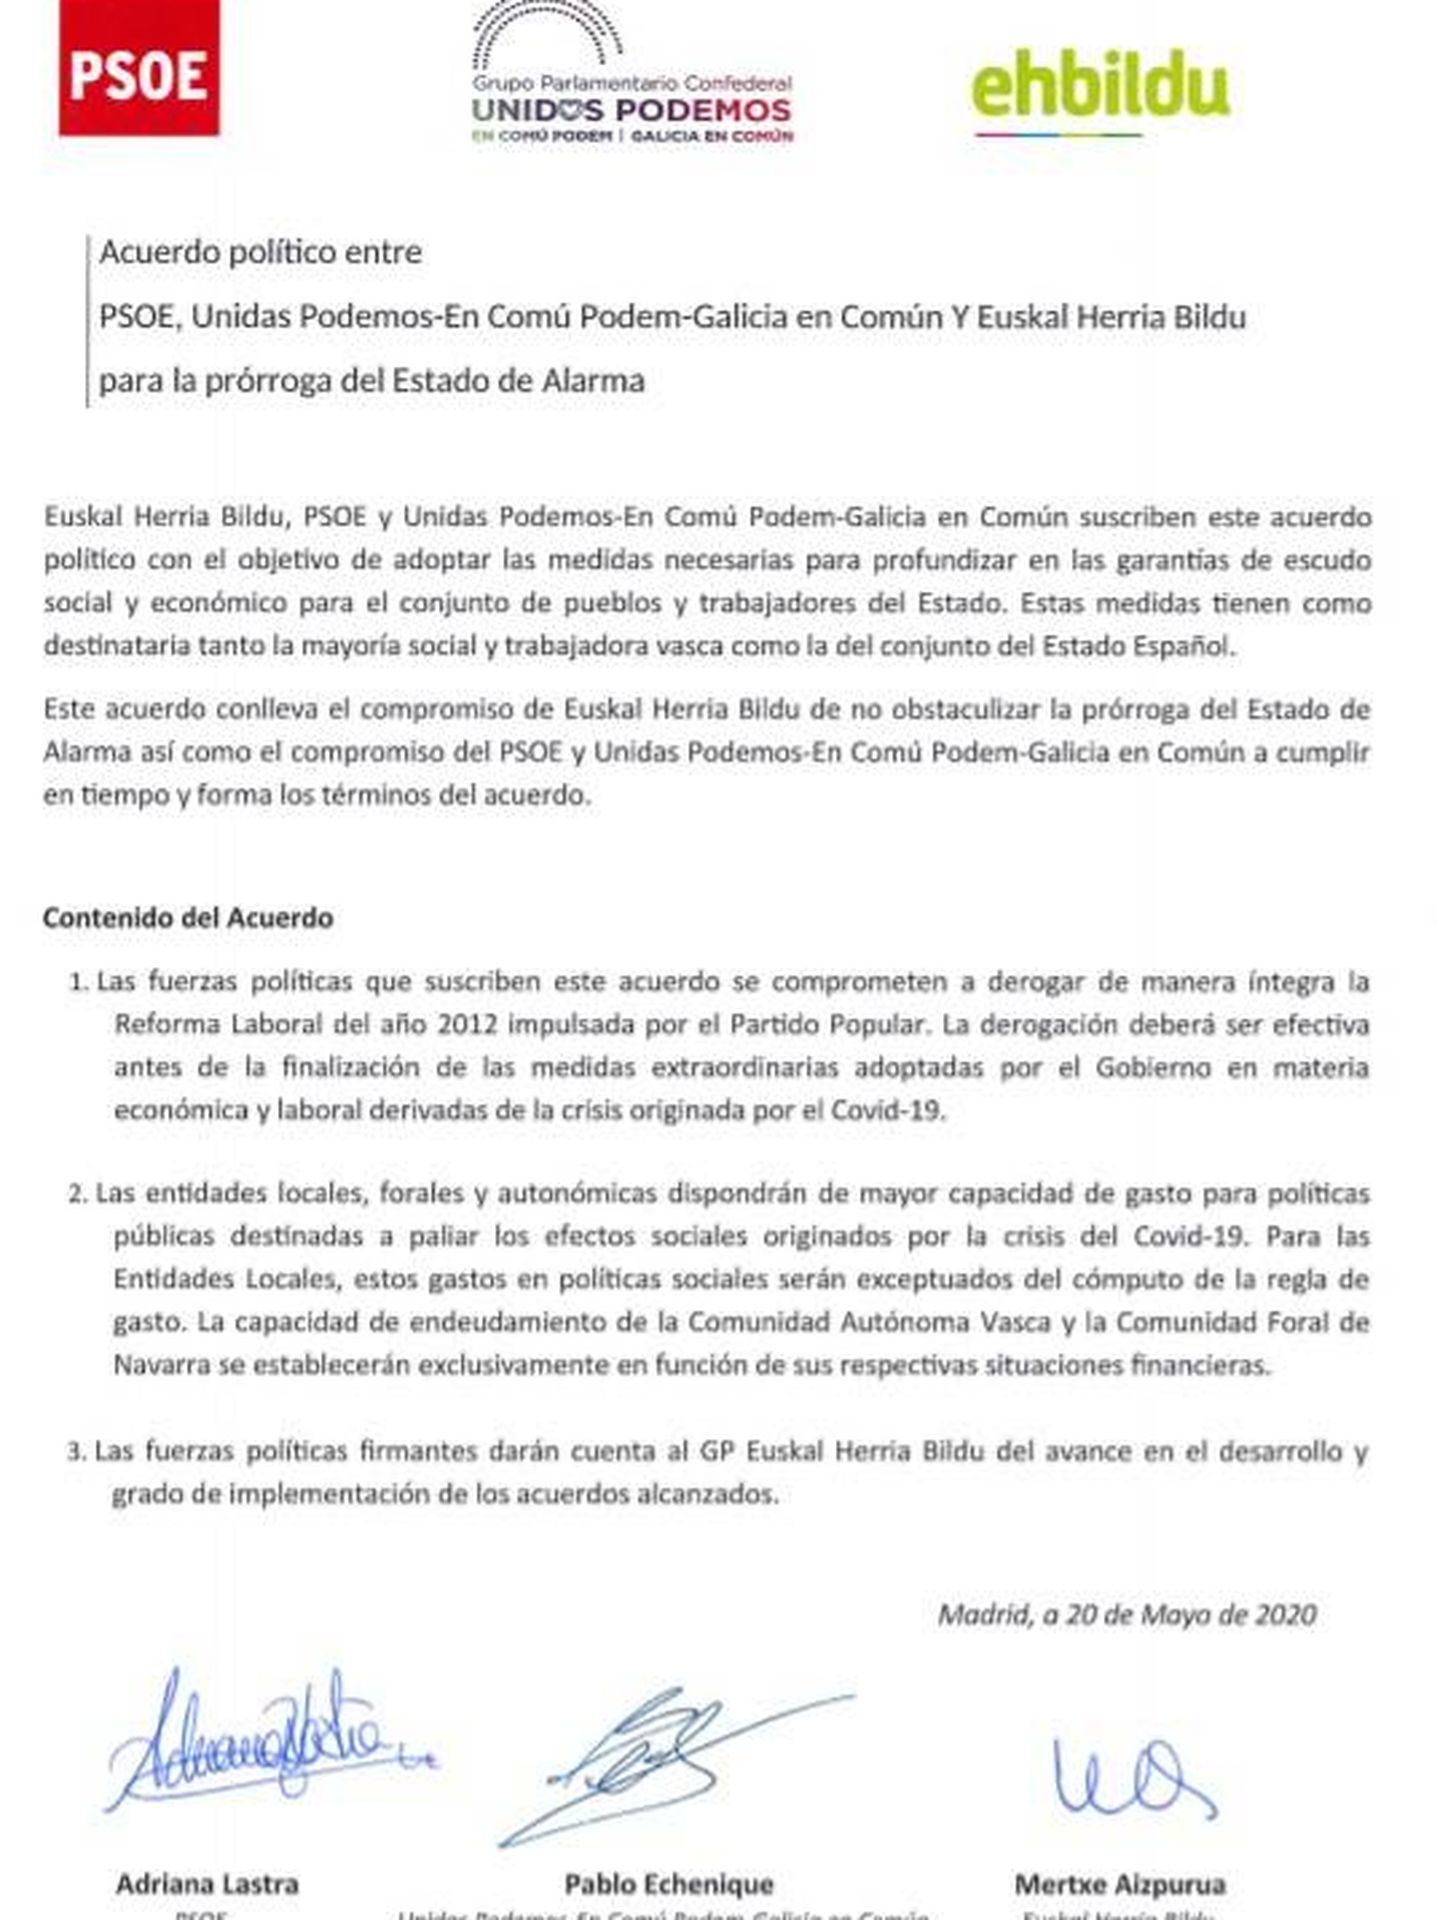 Consulte aquí en PDF el acuerdo de PSOE, Unidas Podemos y EH Bildu para derogar íntegramente la reforma laboral del PP de 2012. 